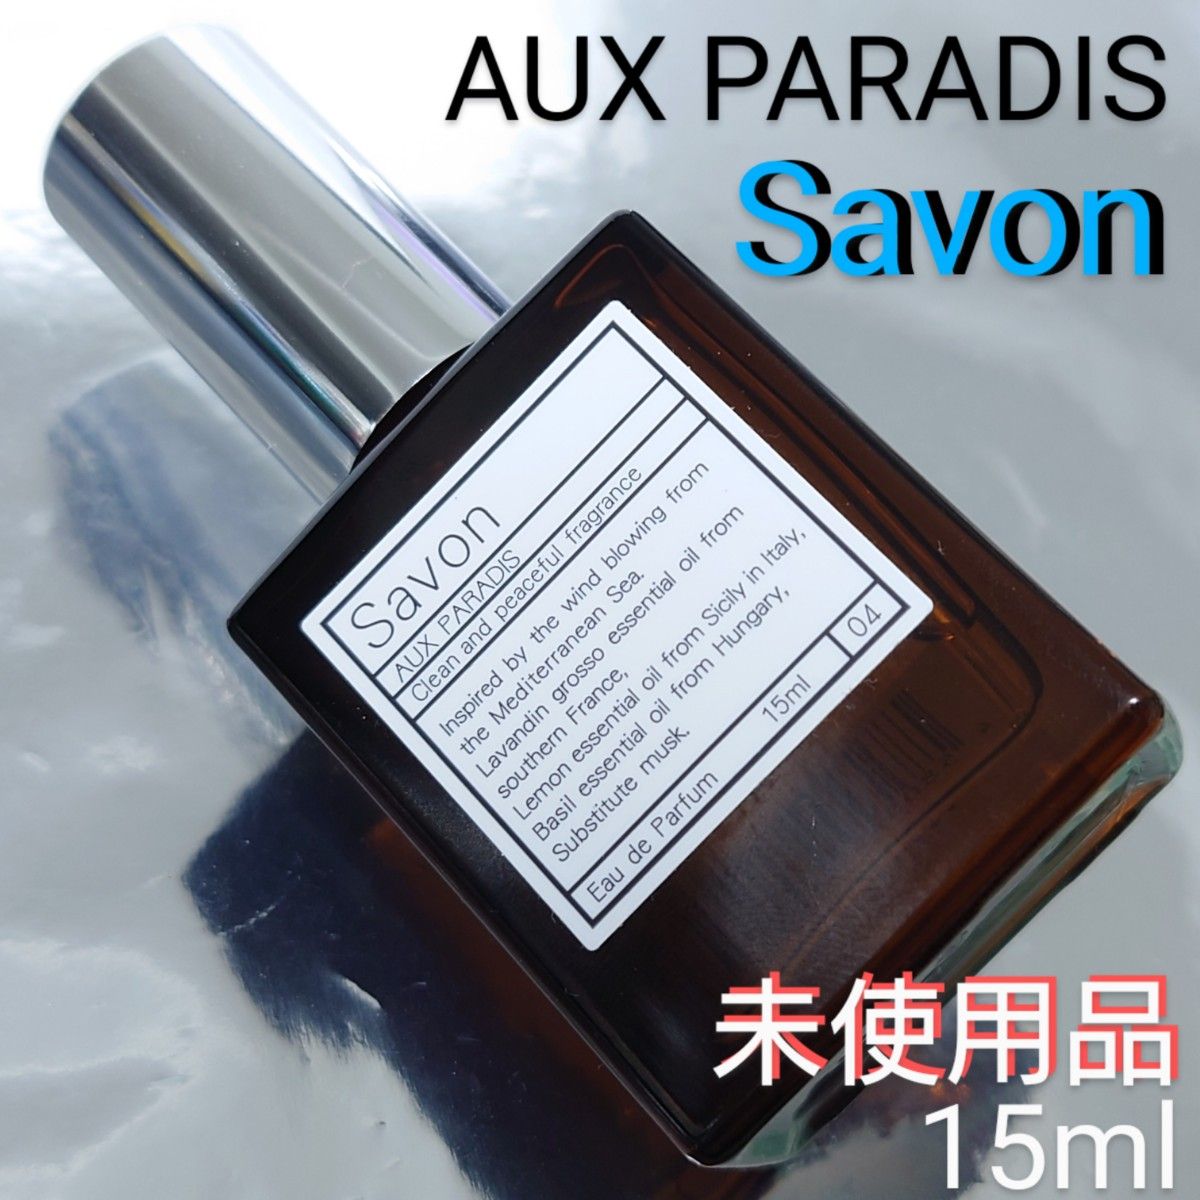  オゥパラディ AUX PARADIS 香水 フレグランス オードパルファム パルファム EDP オゥ パラディ 15ml サボン   名入れ無し